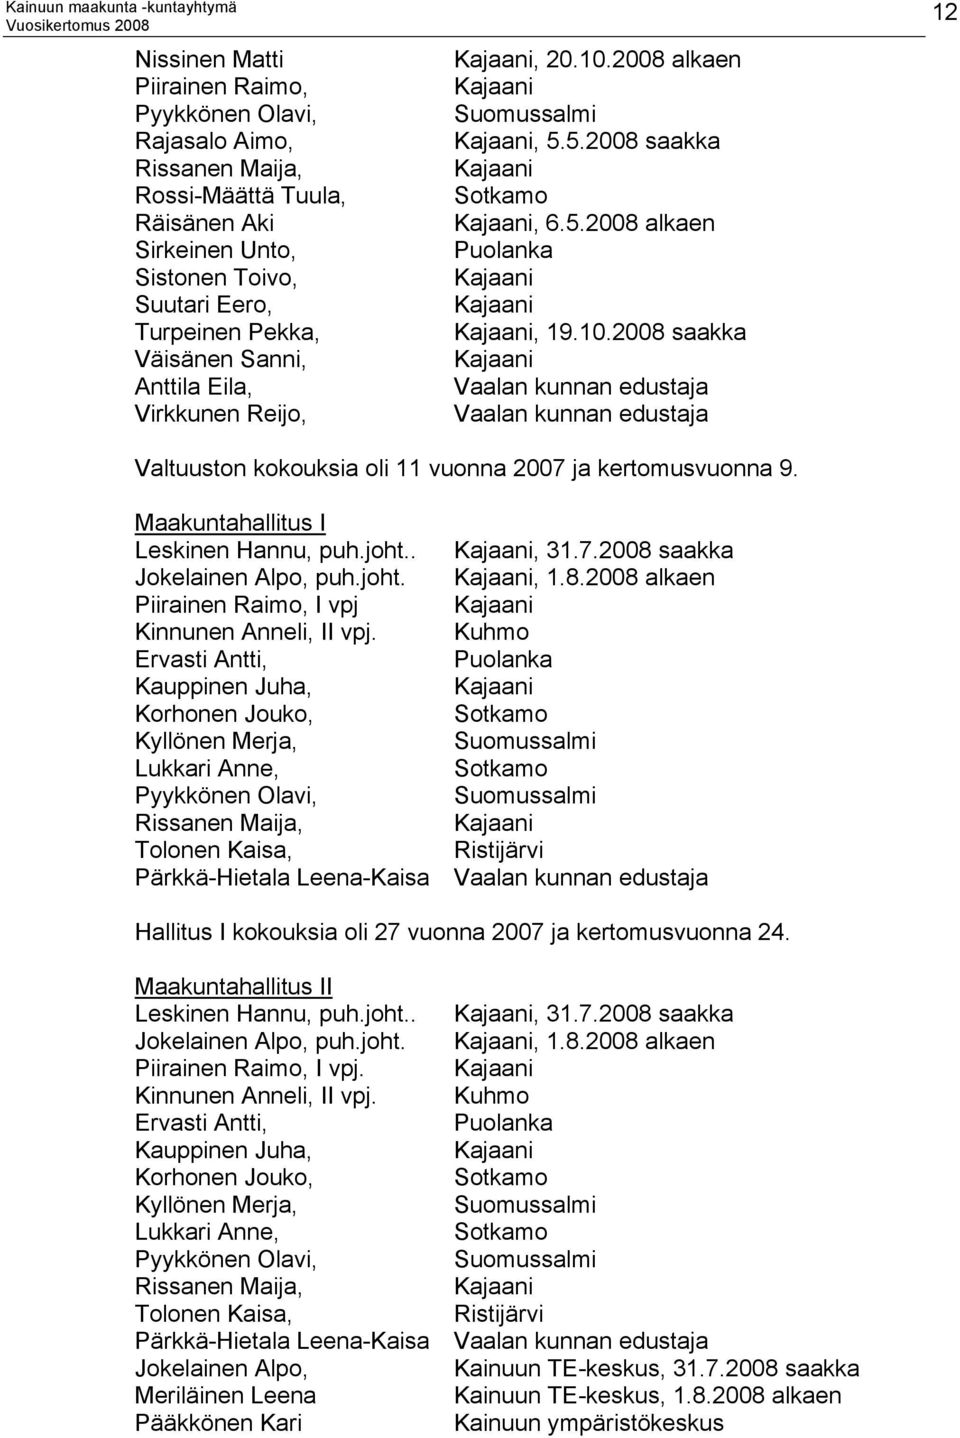 Maakuntahallitus I Leskinen Hannu, puh.joht.. Kajaani, 31.7.2008 saakka Jokelainen Alpo, puh.joht. Kajaani, 1.8.2008 alkaen Piirainen Raimo, I vpj Kajaani Kinnunen Anneli, II vpj.